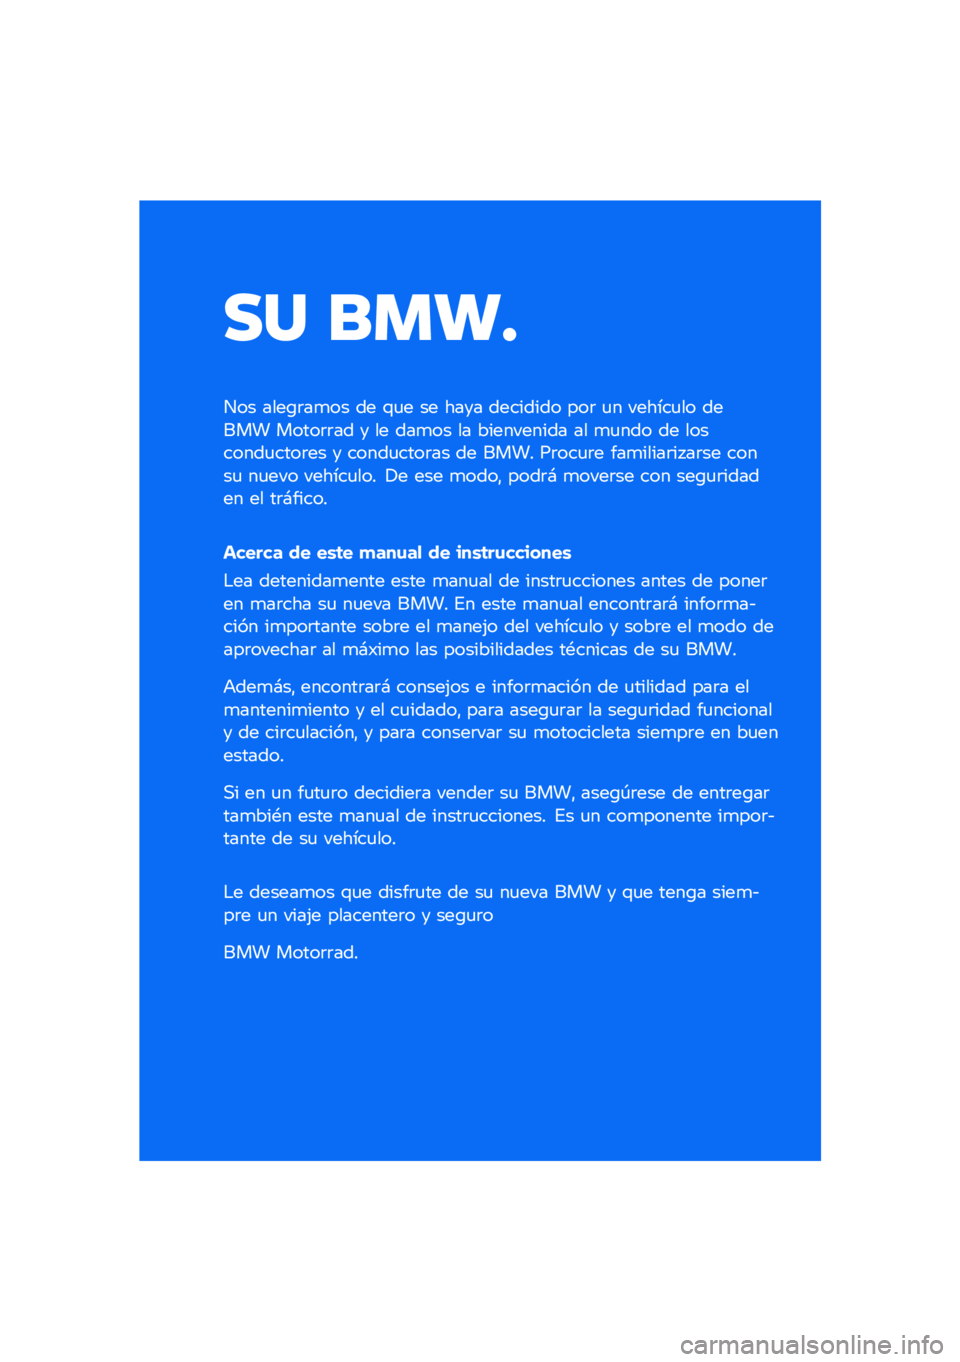 BMW MOTORRAD M 1000 RR 2021  Manual de instrucciones (in Spanish) �� ����
��� ����\b�	��
�� �� �\f�
� �� ���� �������� ���	 �
� ������
�� ����� �����	�	�� � �� ���
�� �� ���������� �� �
�
��